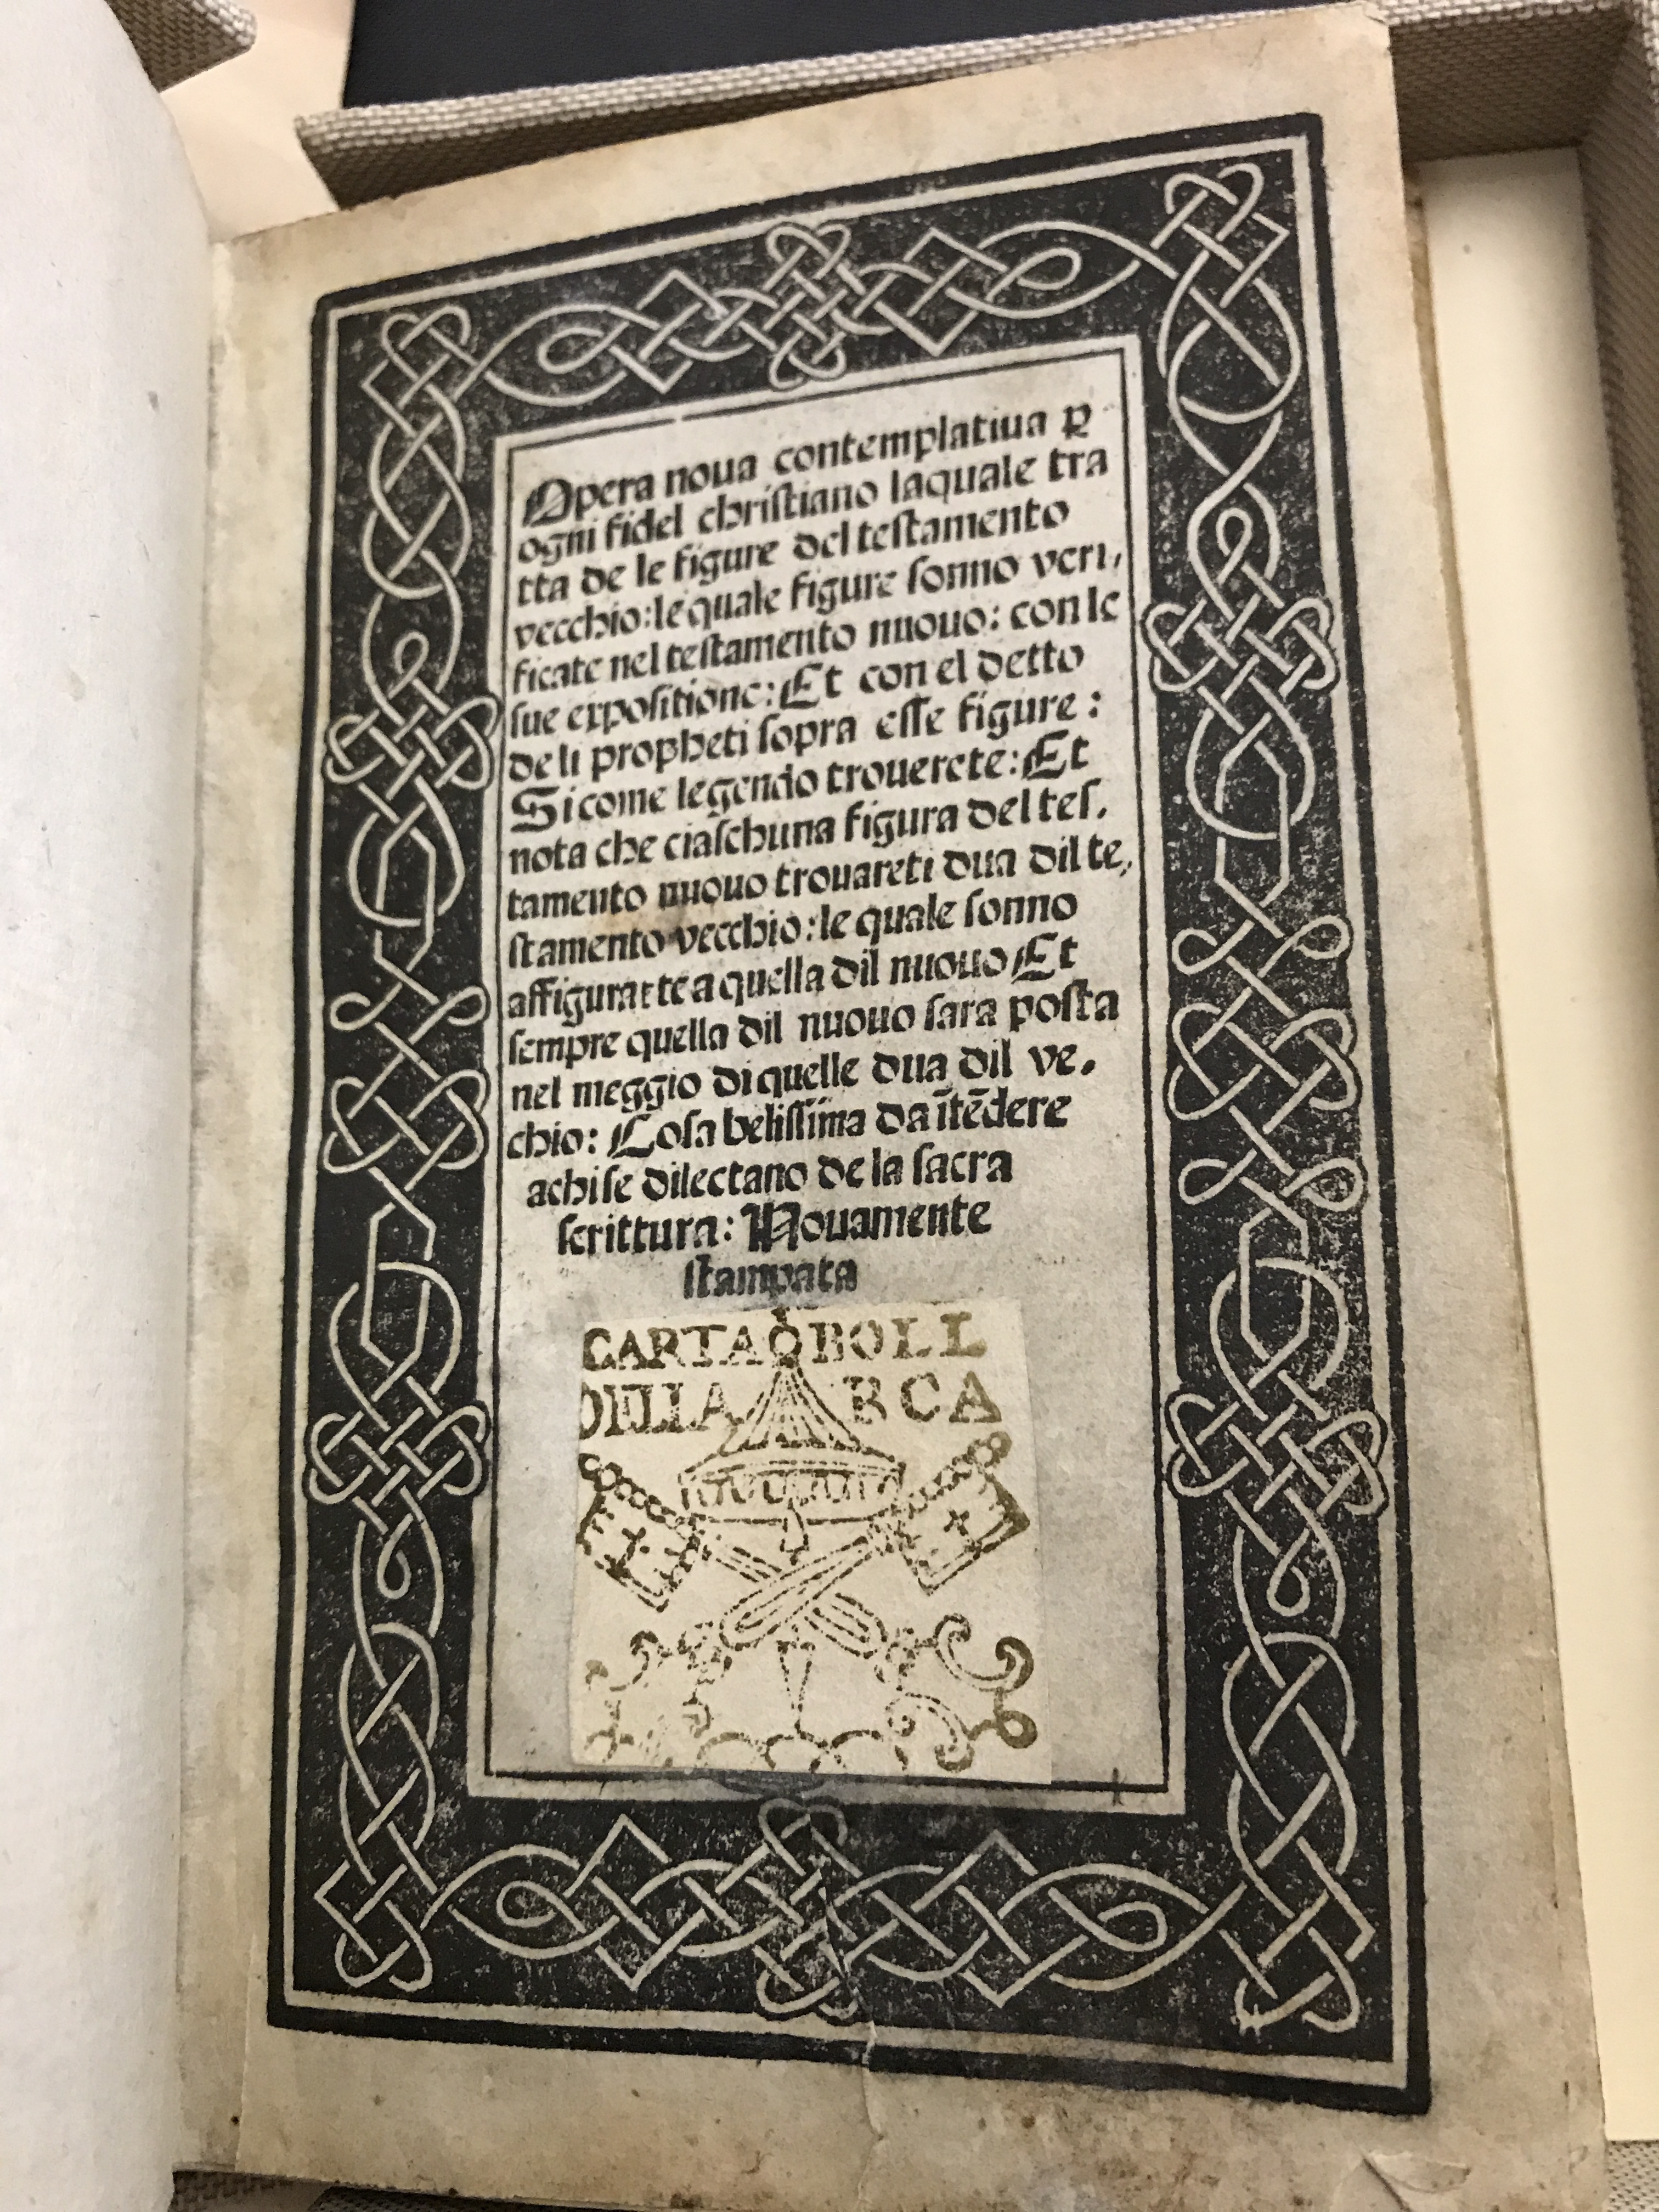 Opera noua contemplatiua p[er] ogni fidel christiano laquale tratta de le figure del testamento vecchio, Andrea Vavassori (1530)